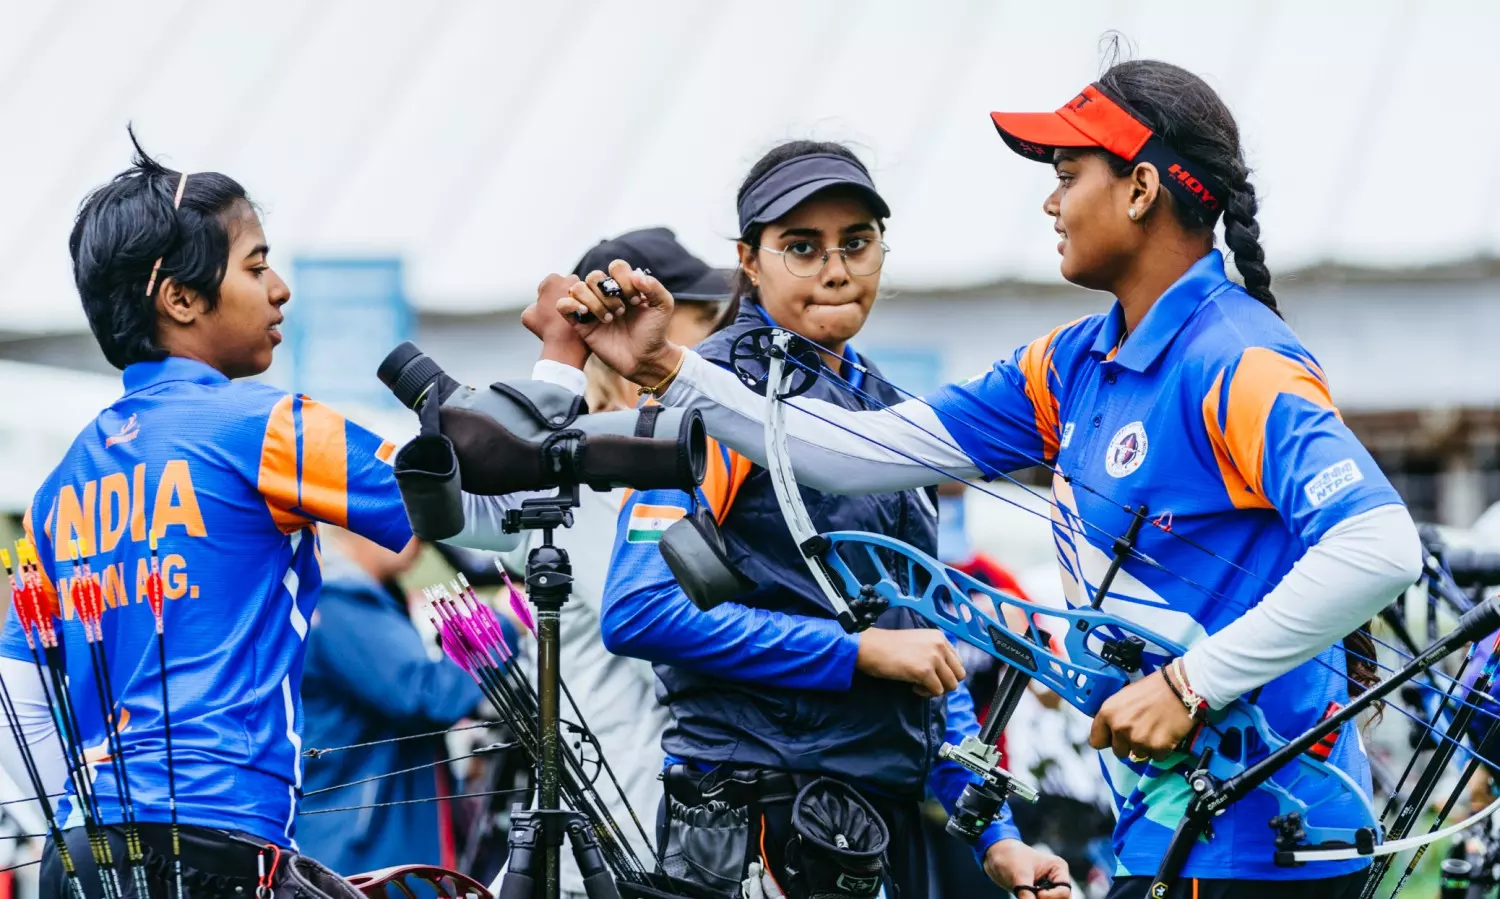 Archery: कंपाउंड तीरंदाज बेटियां पहली बार विश्व चैंपियन बनीं; ज्योति, परणीत और अदिति की टीम ने जीता स्वर्ण